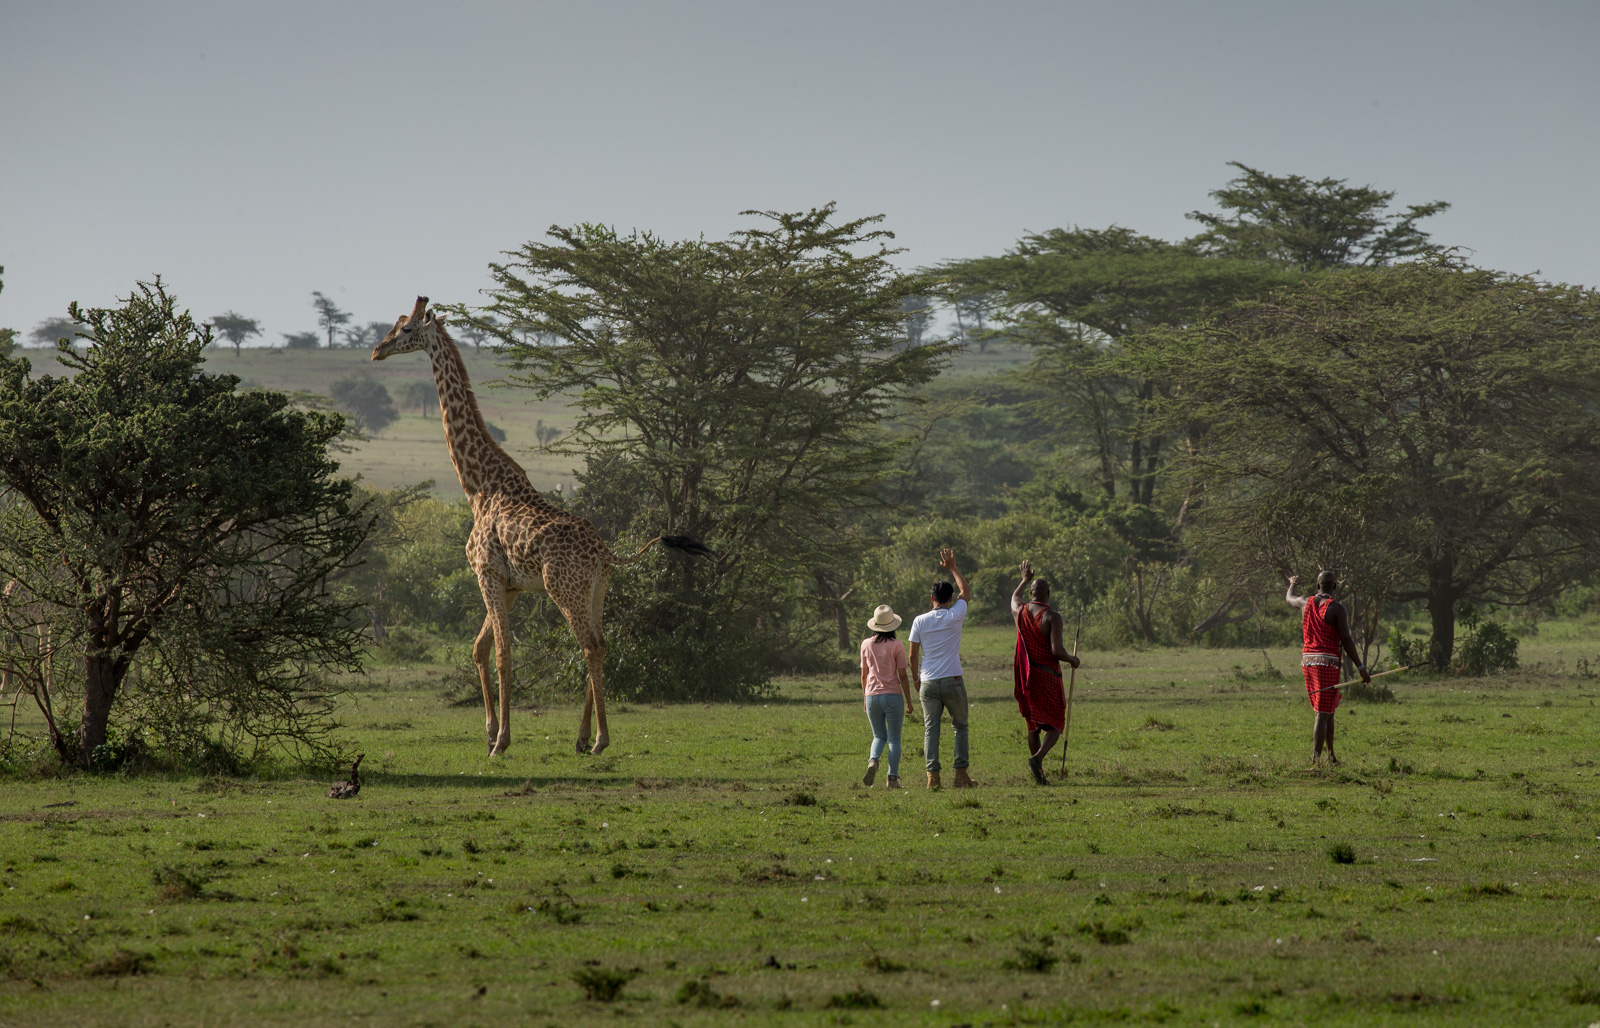 肯尼亚旅游局在华路演全面启动 2018全新宣传片即将发布